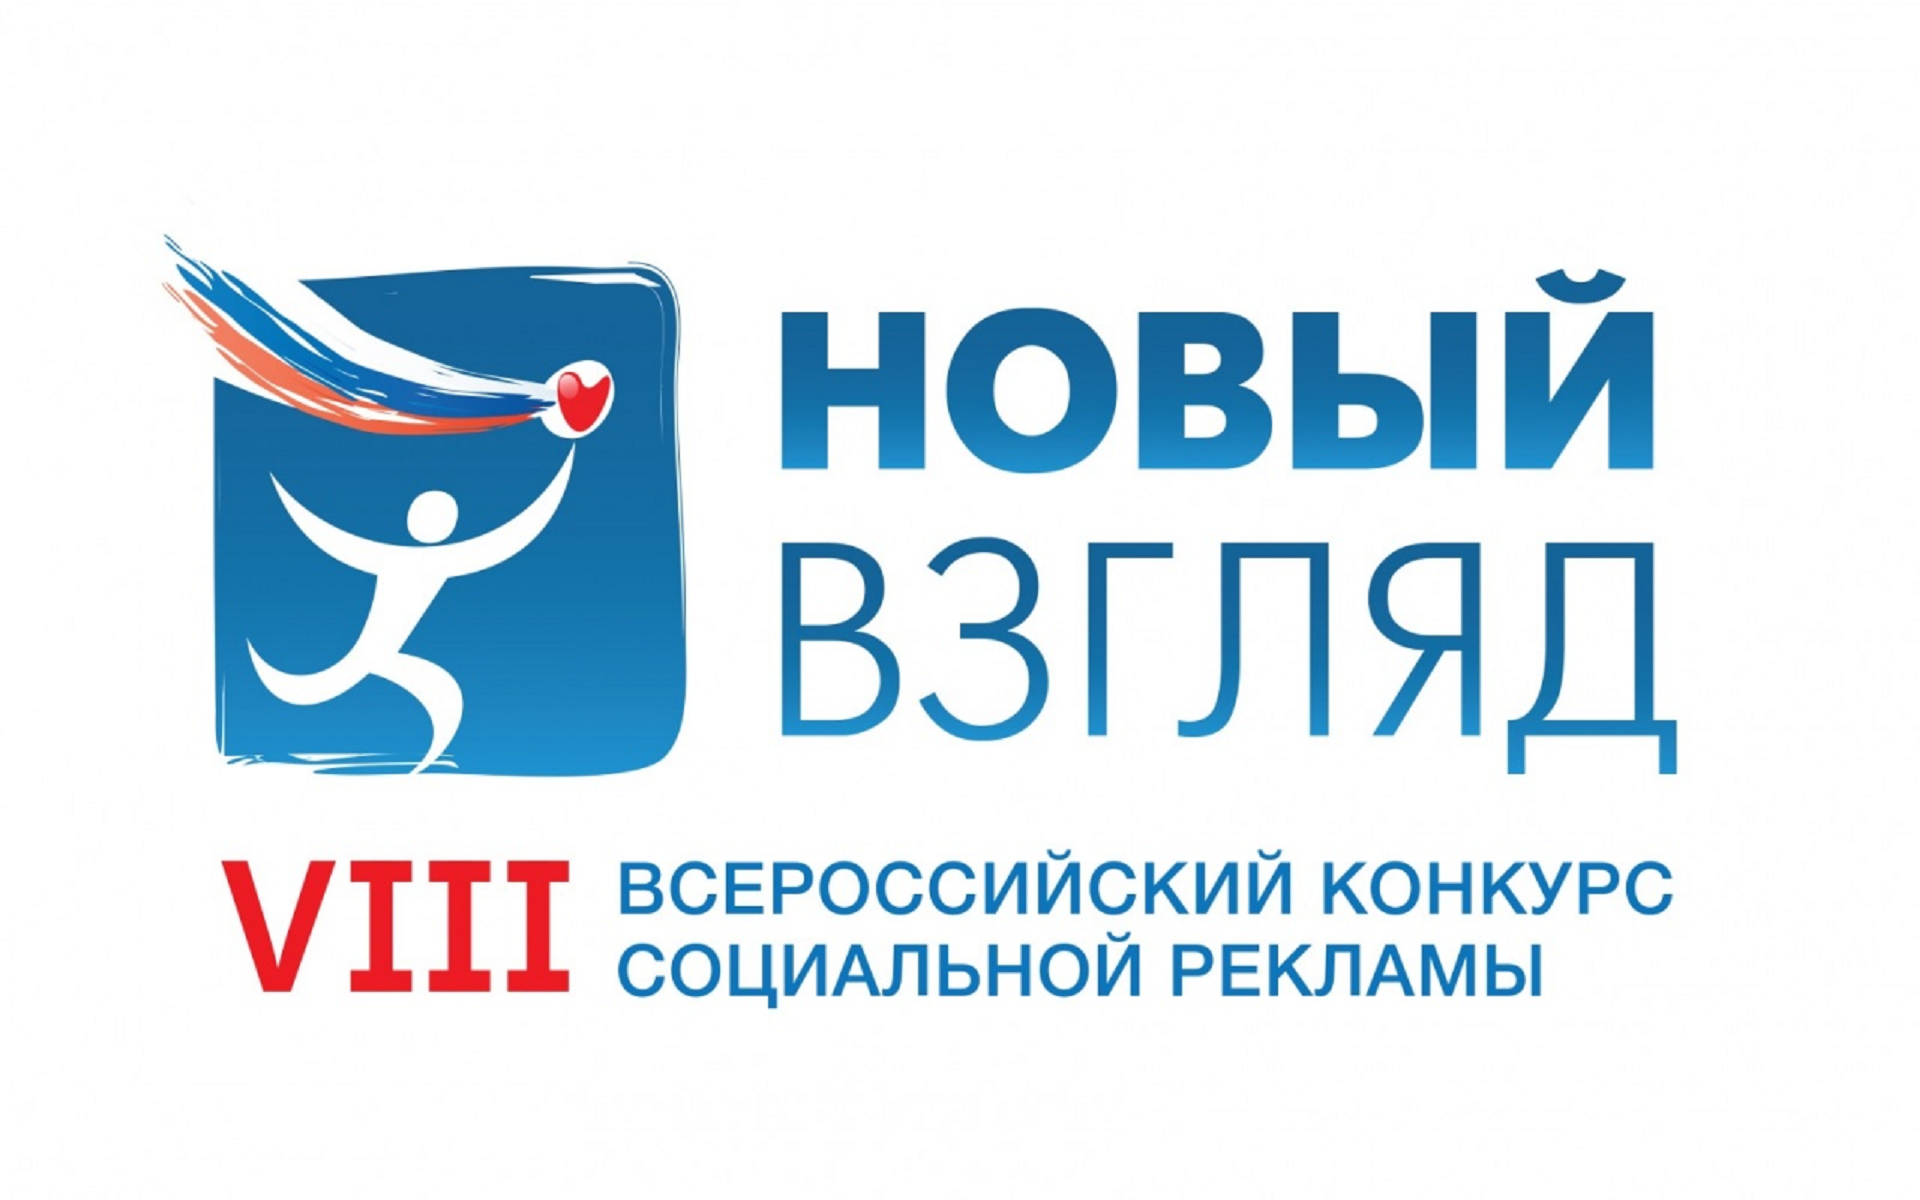 Молодежь ВятГУ приглашают принять участие во Всероссийском конкурсе социальной рекламы «Новый Взгляд»